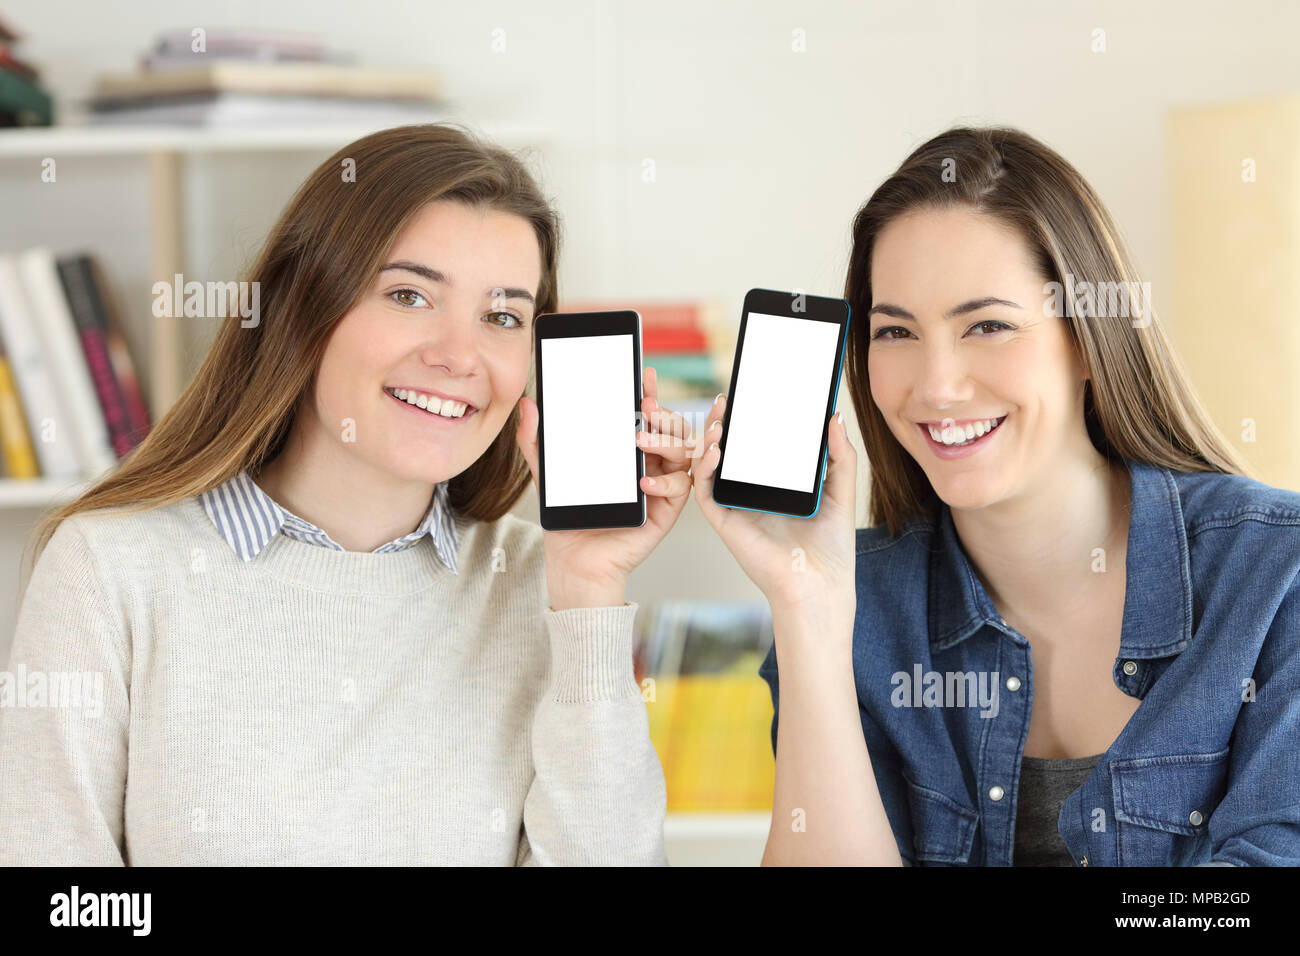 Vorderansicht Portrait von zwei glückliche Schüler zeigen zu Kamera smart phone Bildschirme mockup Stockfoto